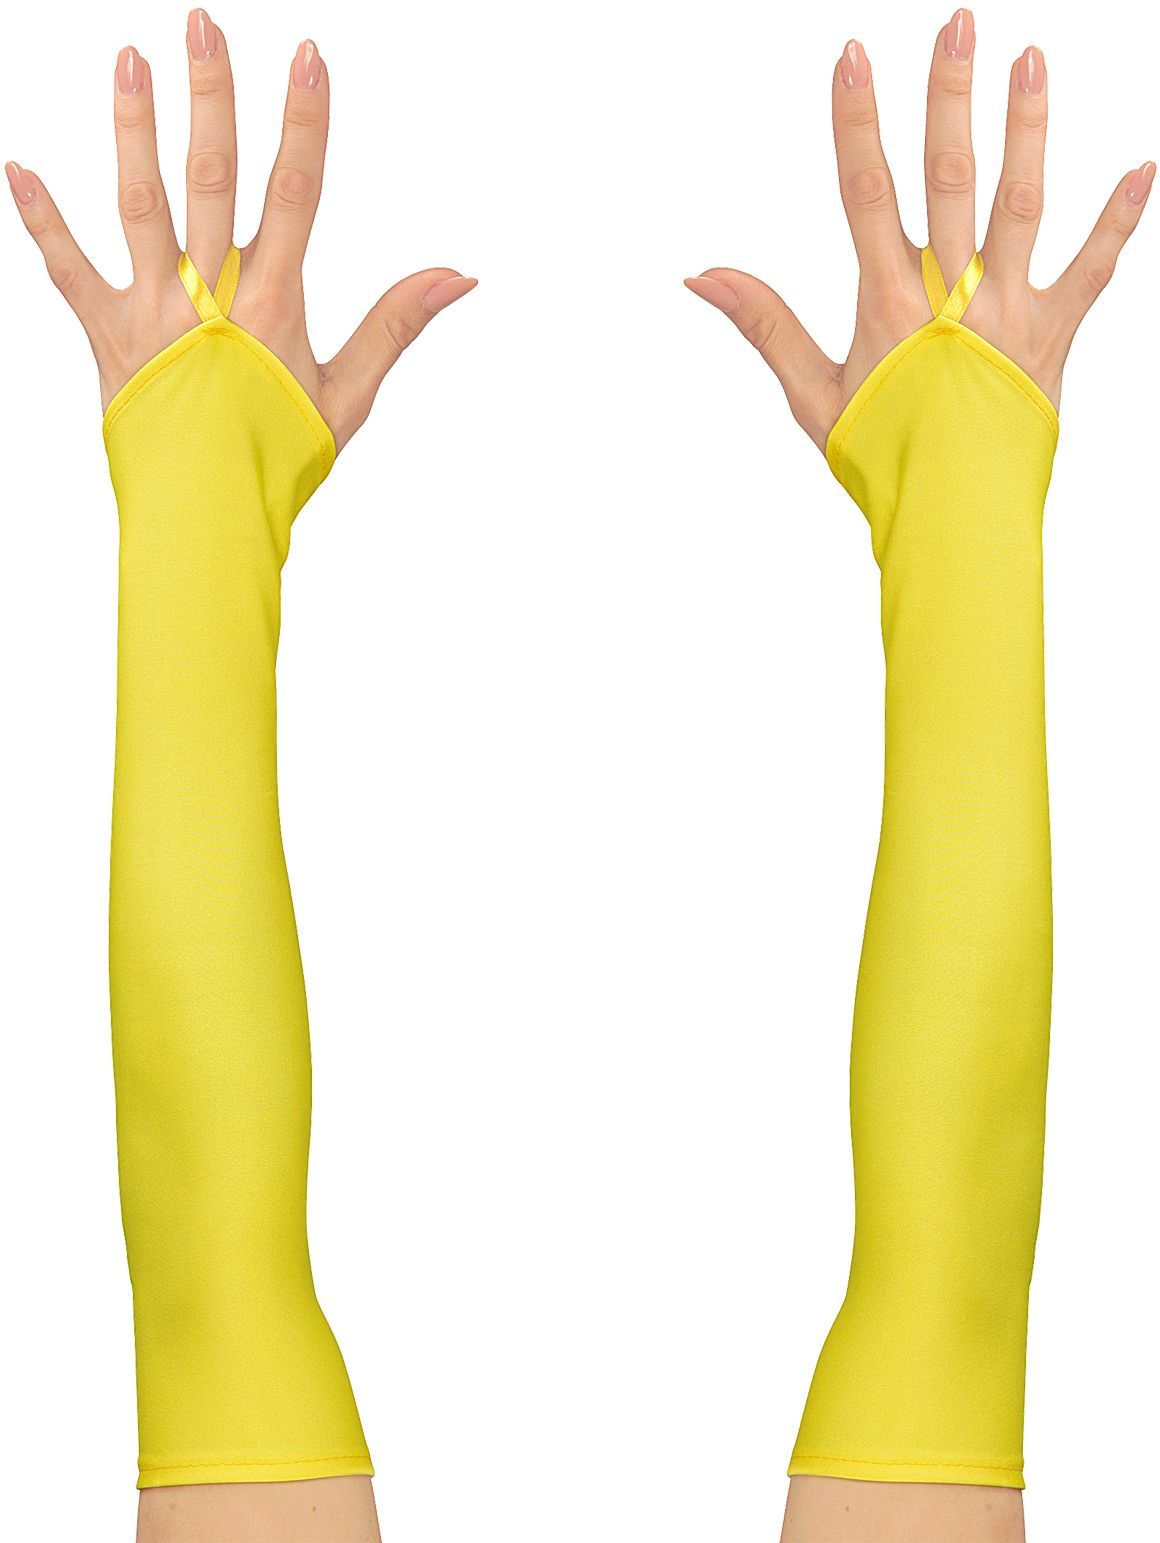 Neon gele toploze satijnen handschoenen